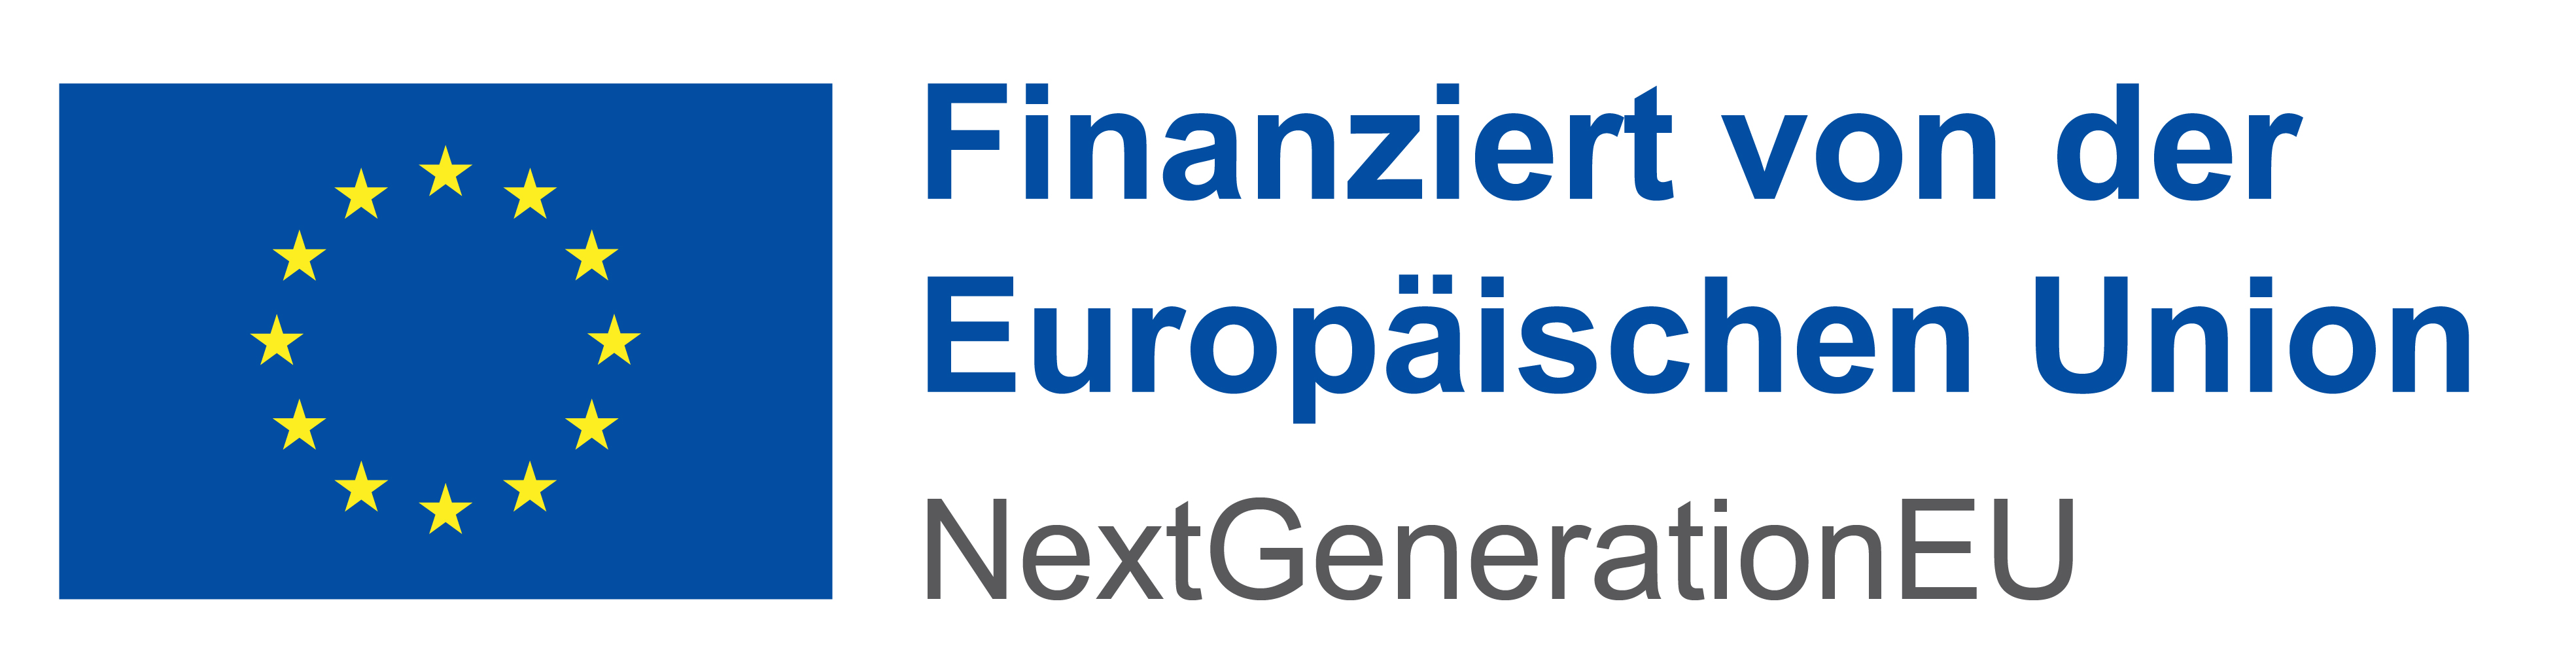 Logo NextGenerationEU. Finanziert von der Europäischen Union